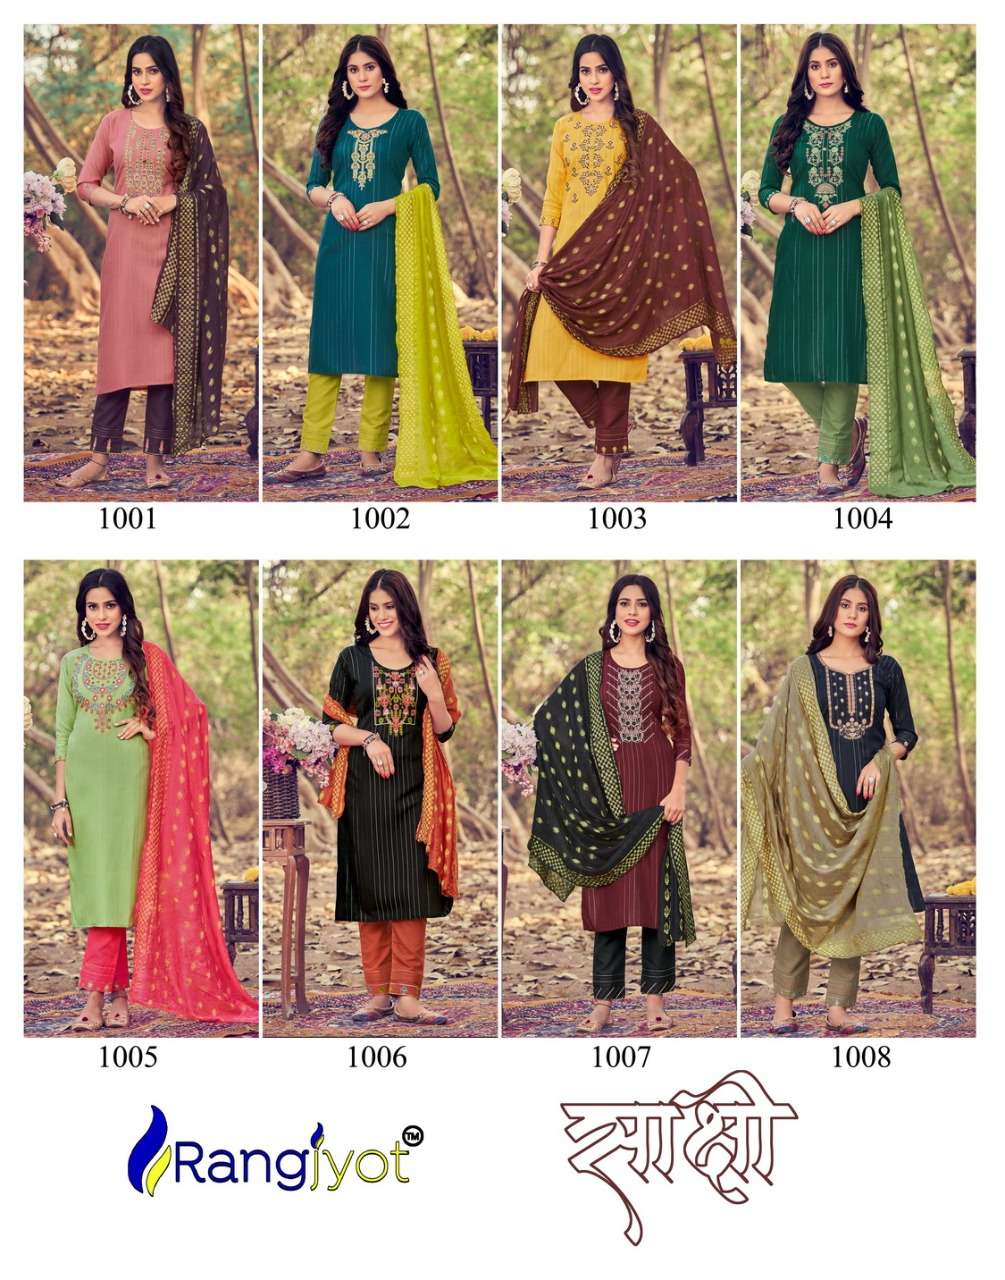 rangjyot sakshi vol 1 1001-1008 series party wear designer kurtis collection wholesale price surat